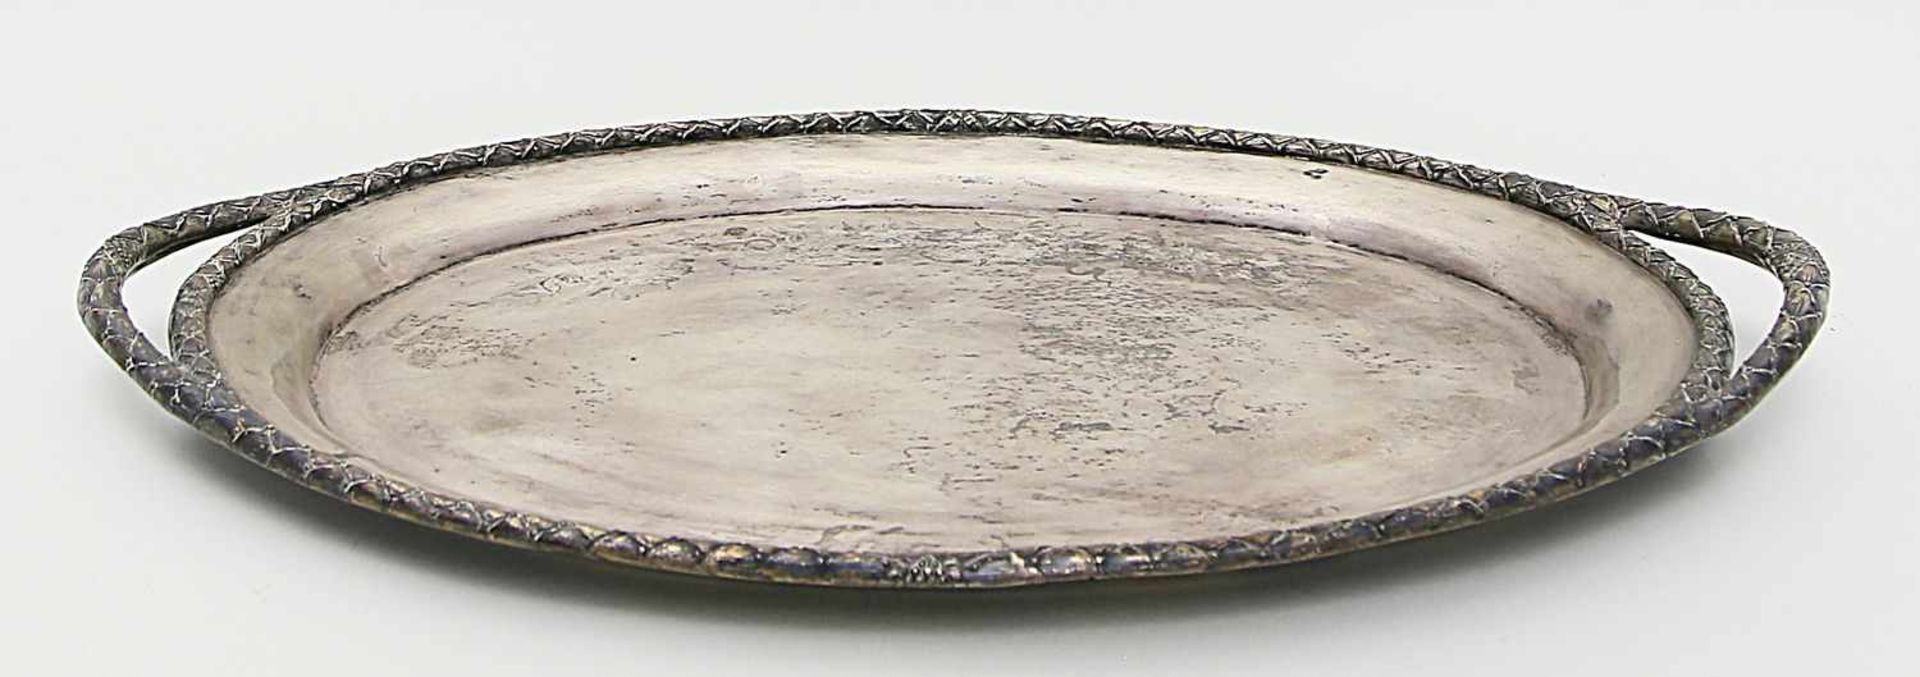 Ovales Doppelhenkeltablett.800/000 Silber, 2.836 g. Leicht ansteigende Fahne, Rand und Griffe mit